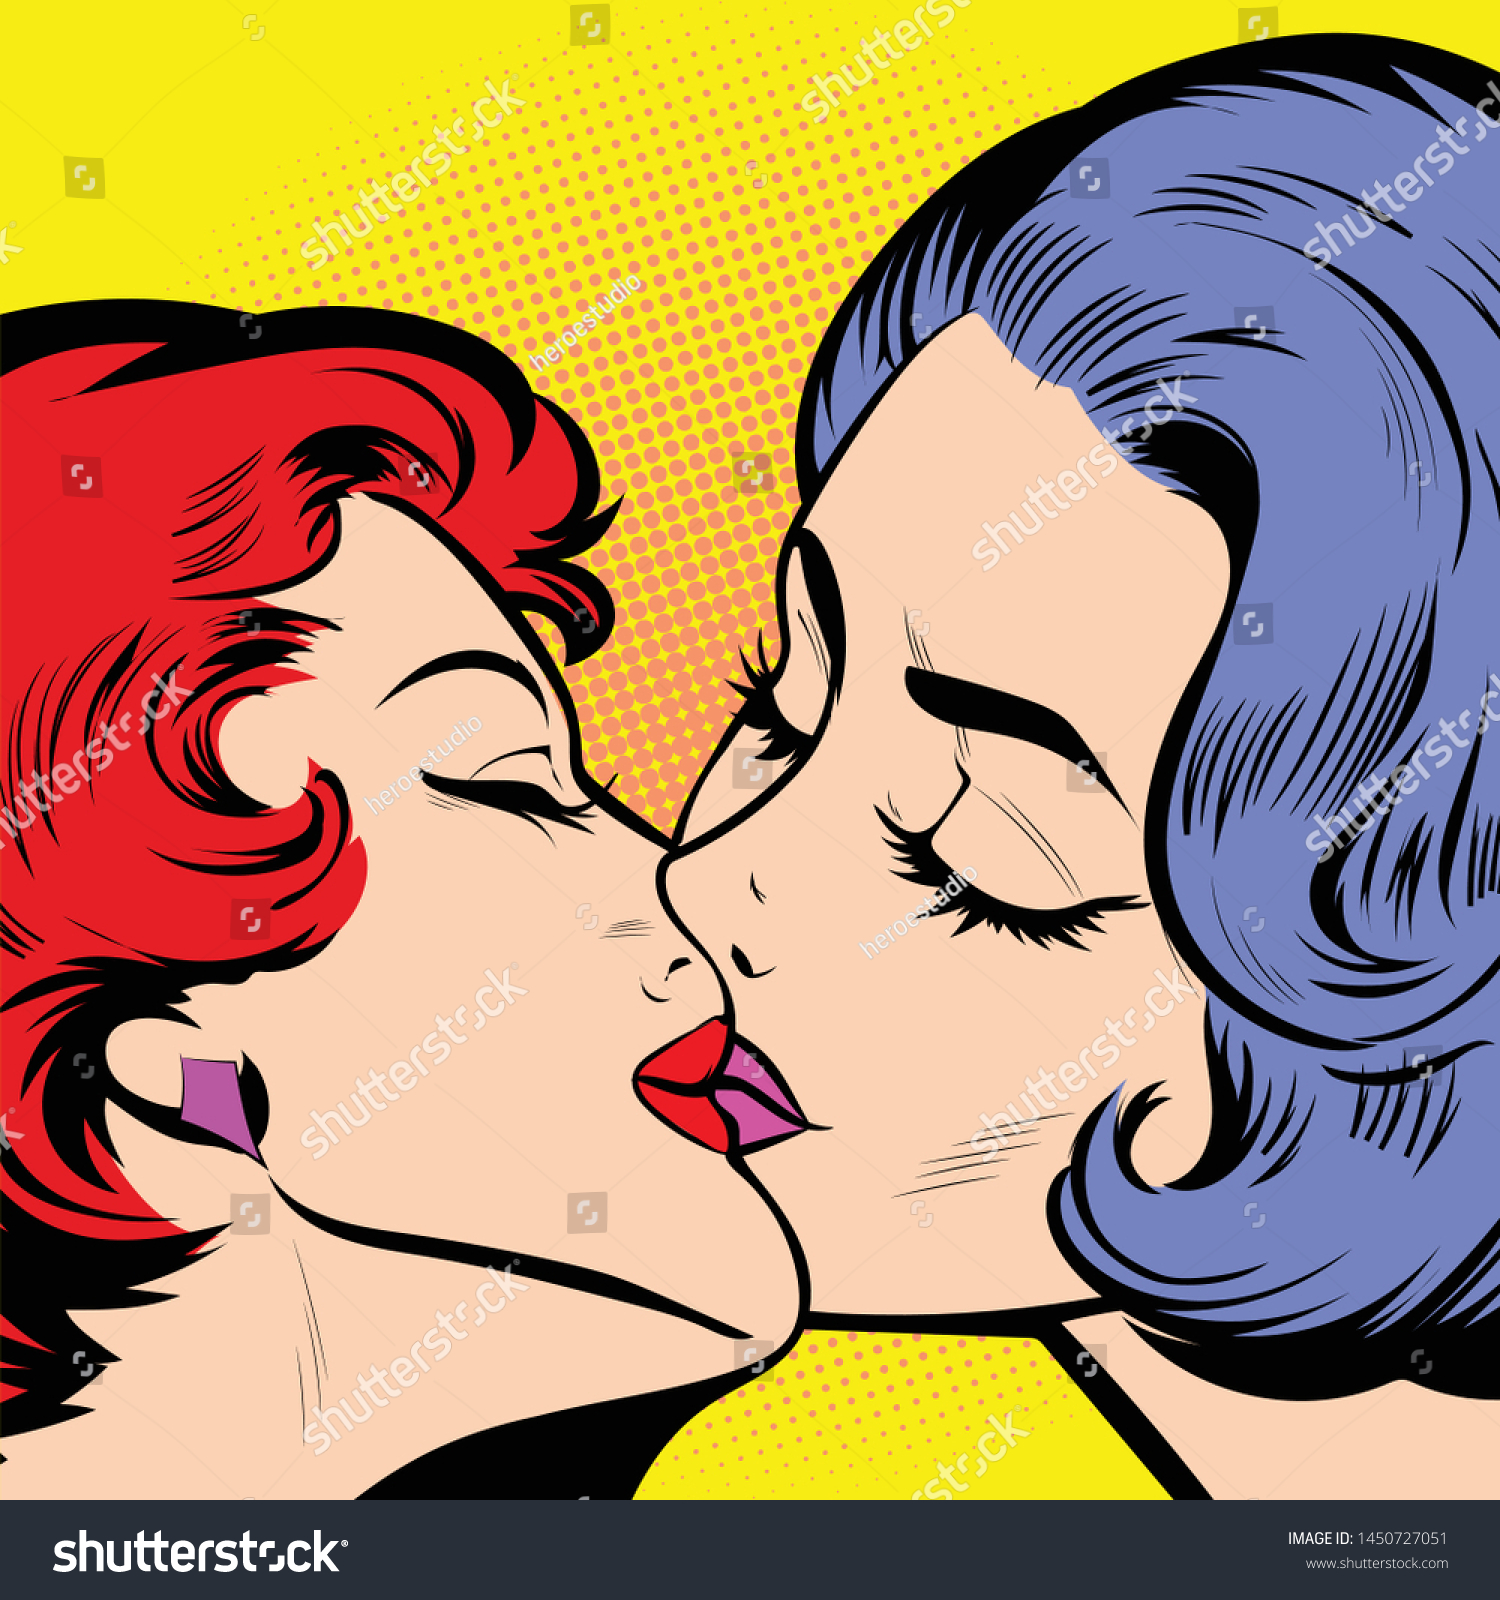 Romantic Lesbian Couple Kissing Retro Comic: стоковая векторная графика (бе...